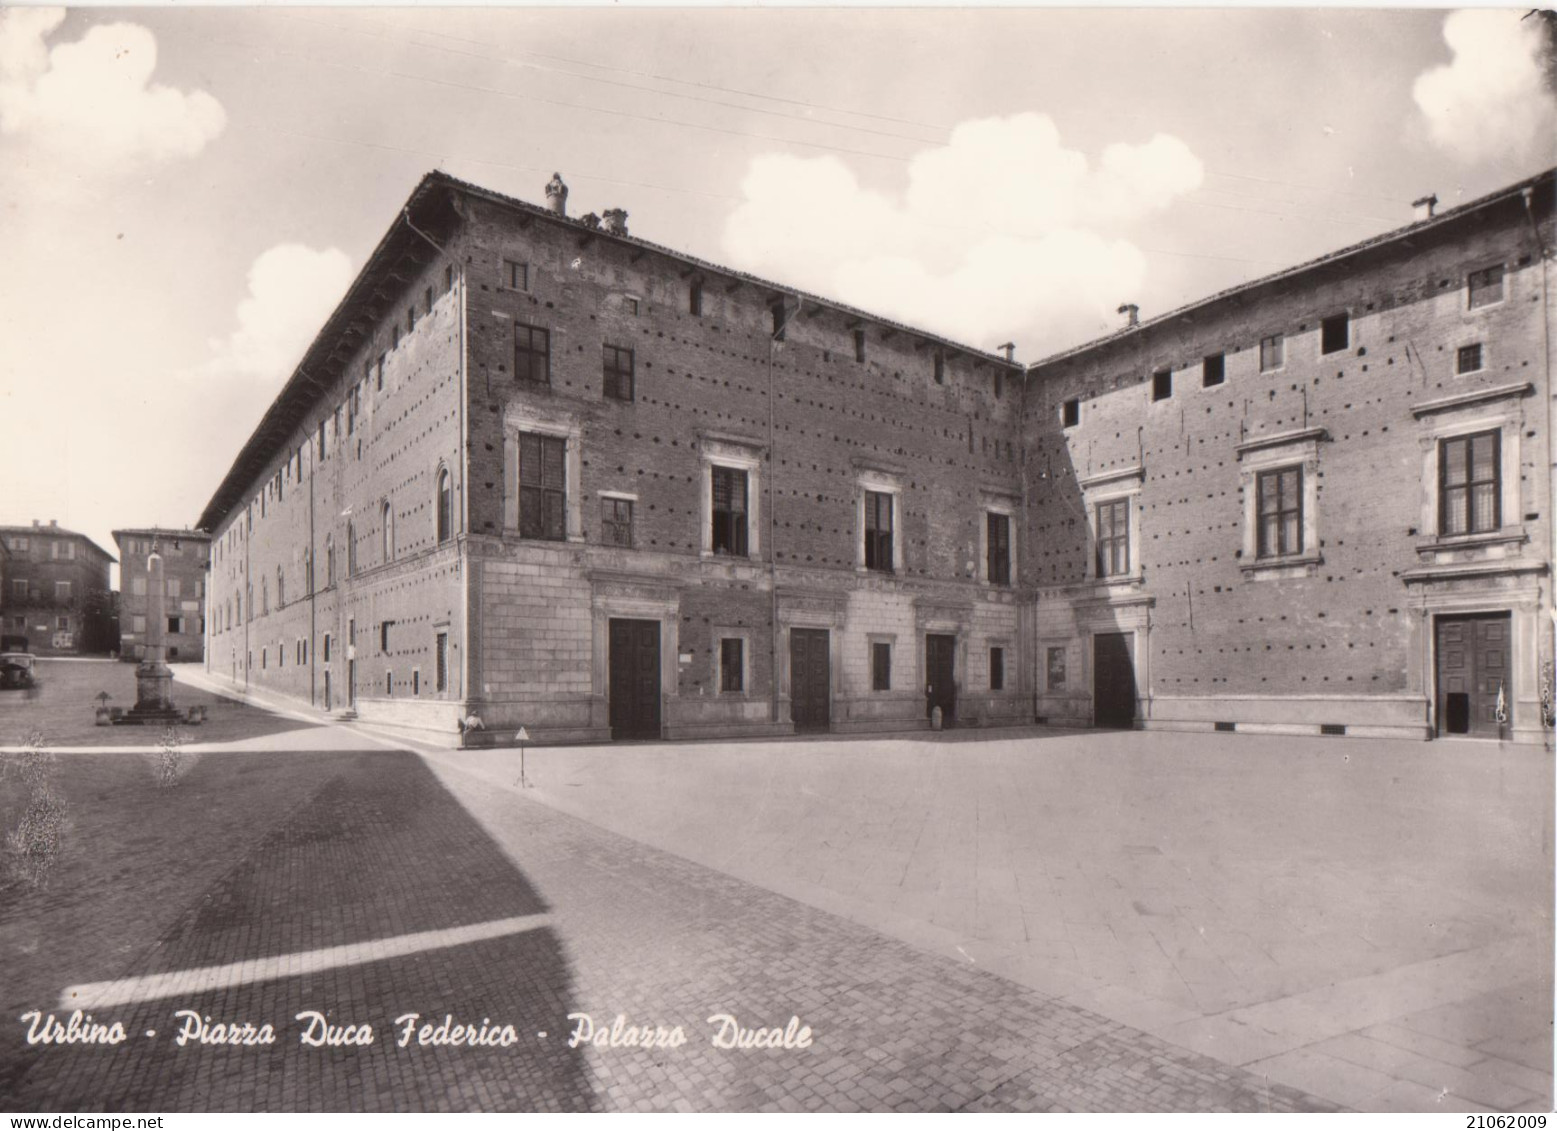 URBINO - PIAZZA DUCA FEDERICO E PALAZZO DUCALE - NV - Urbino